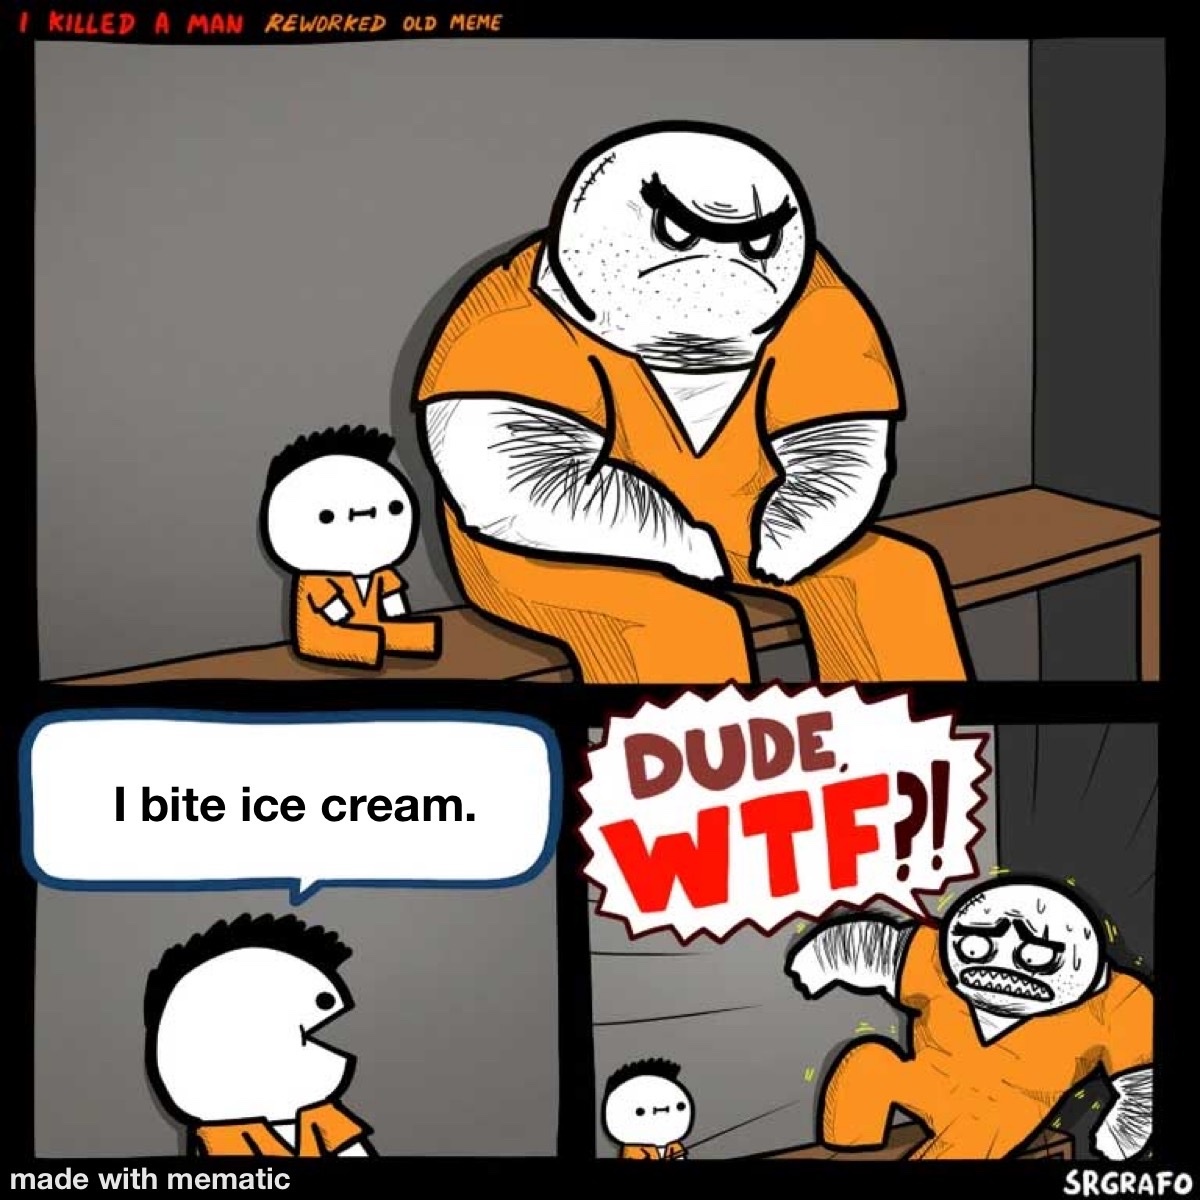 I bite ice cream - meme